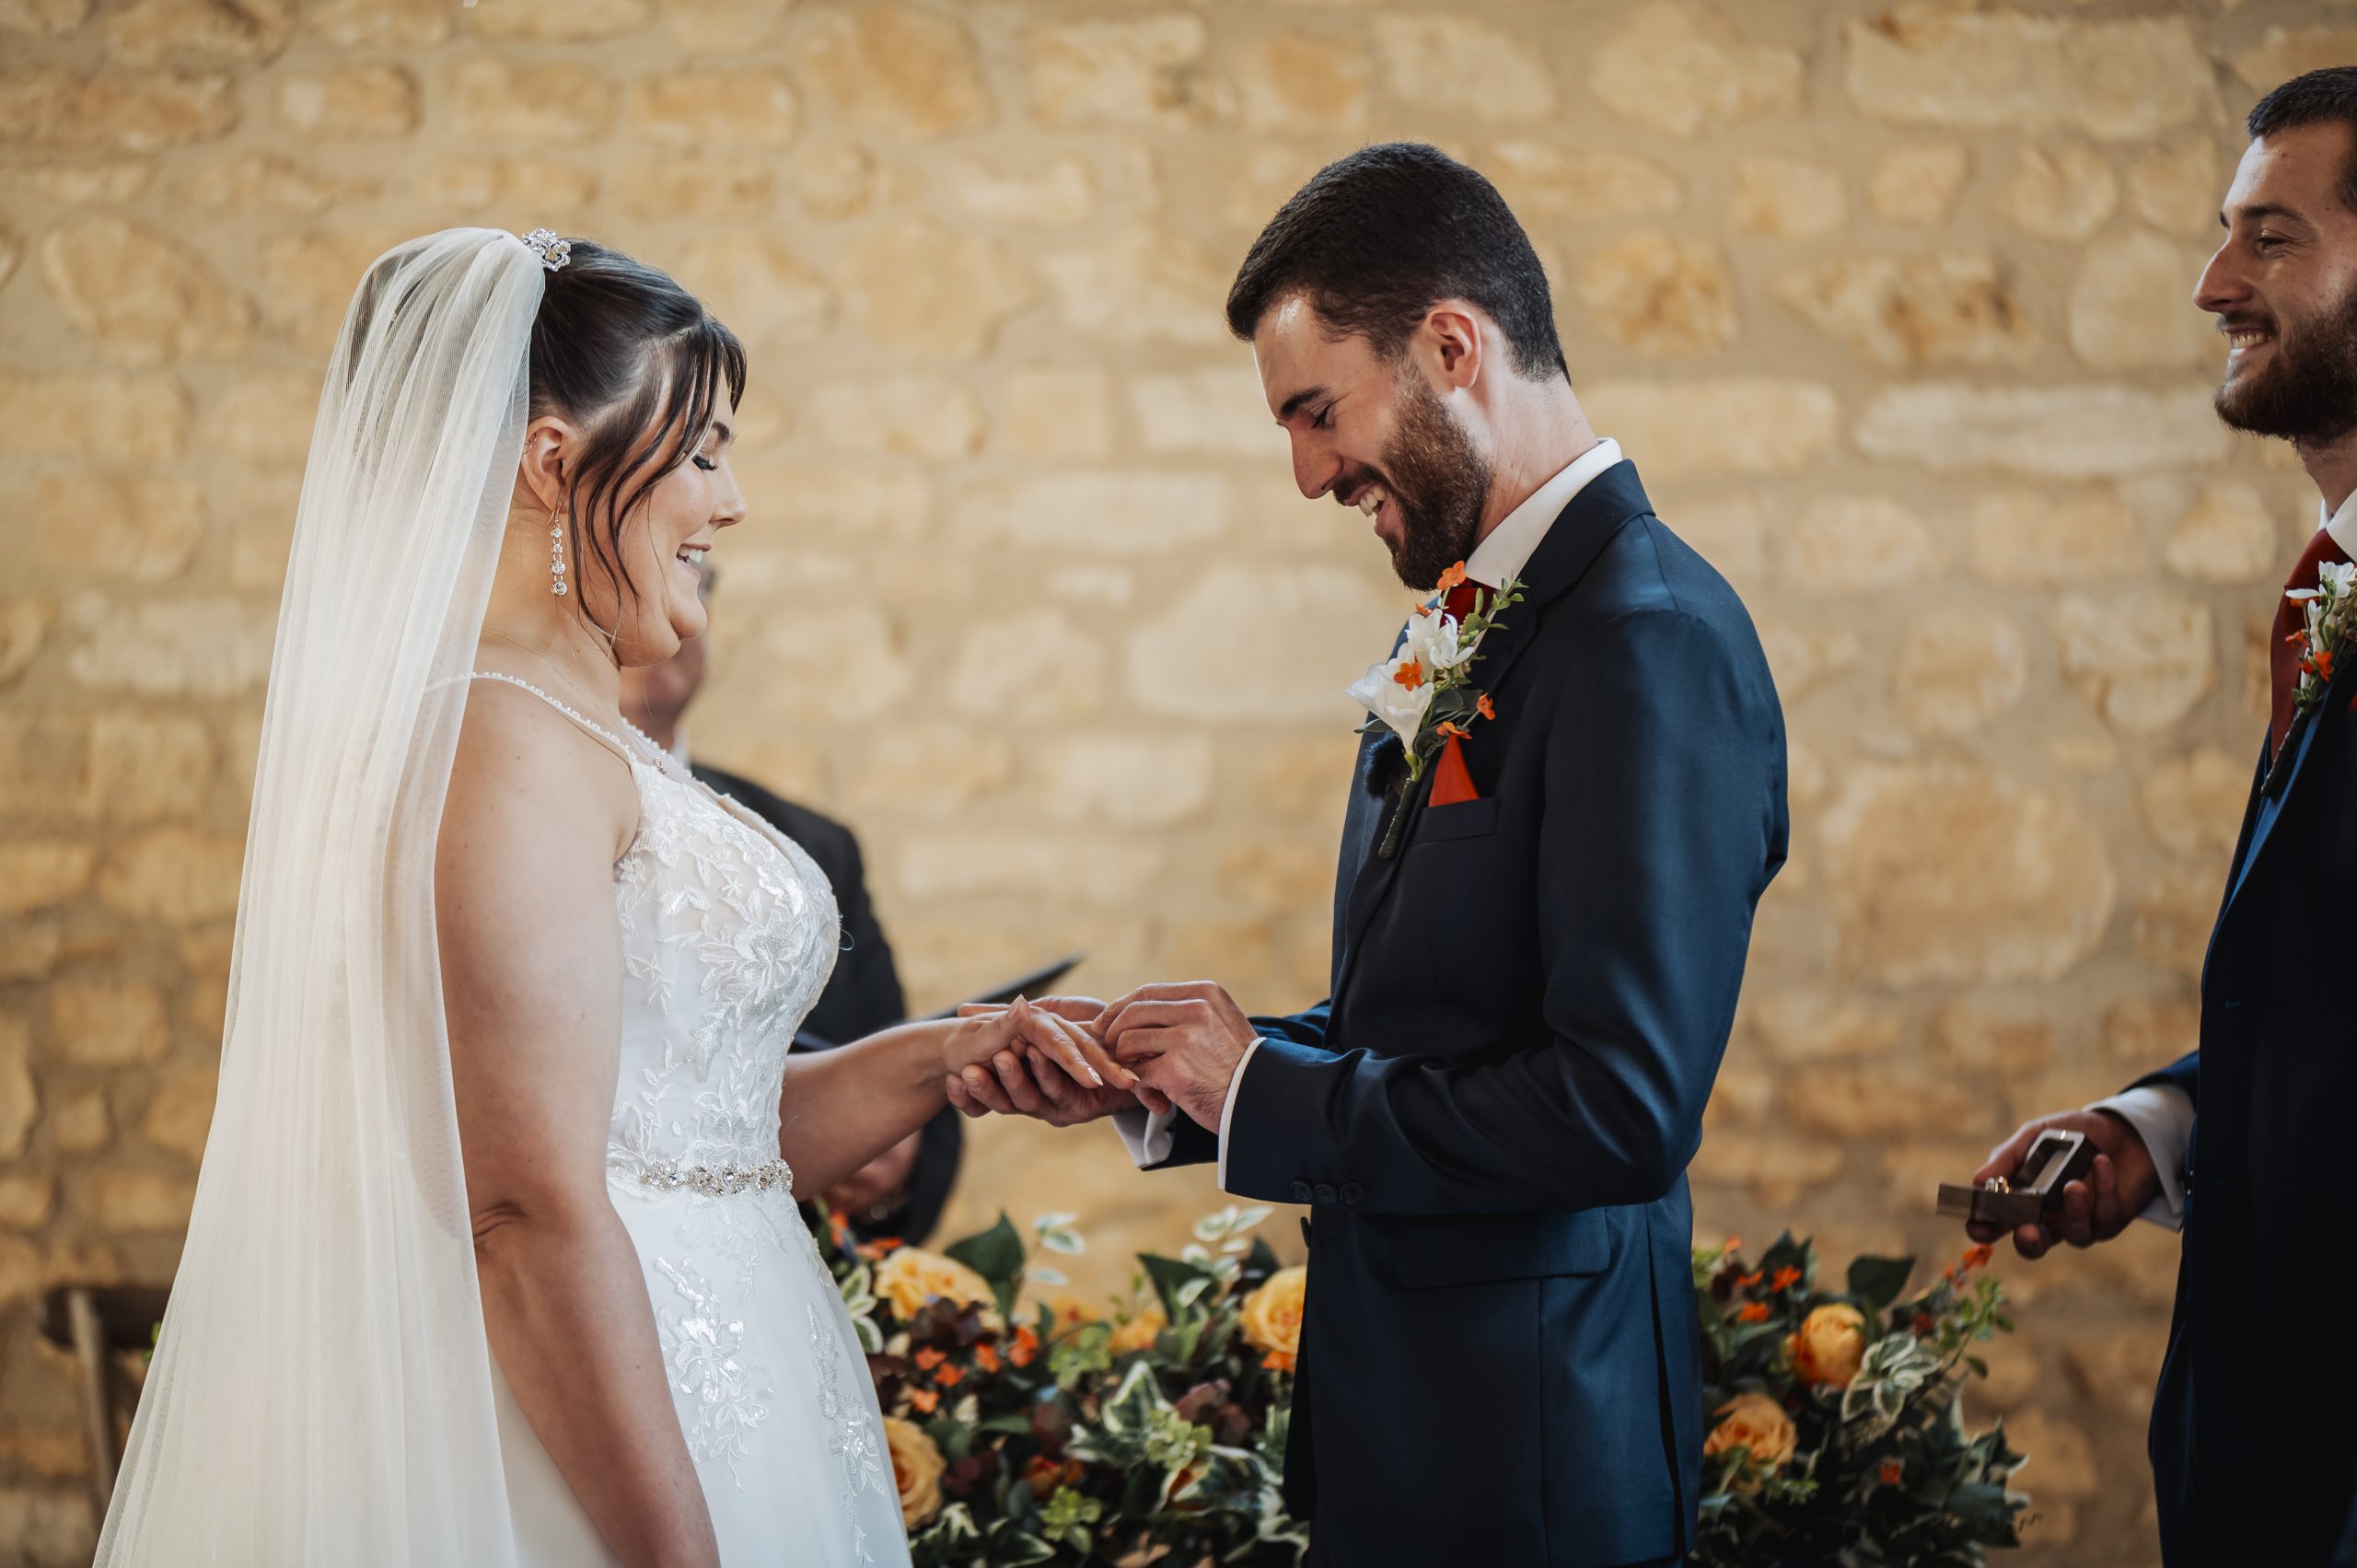 Bride & groom exchanging rings